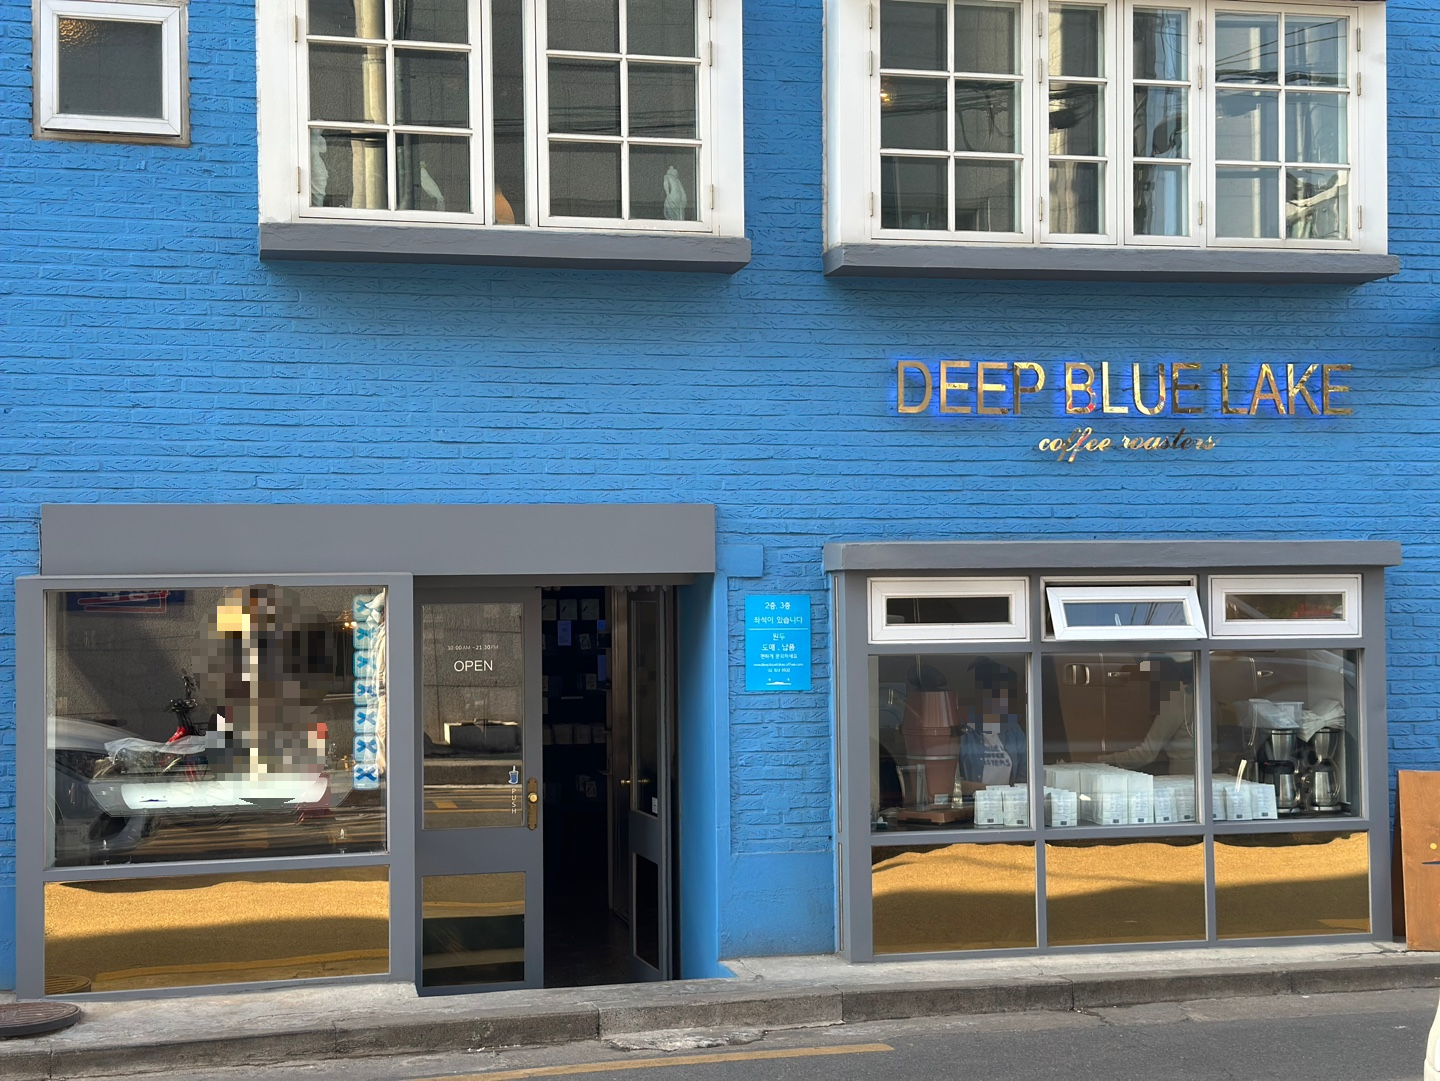 청량한 파란 벽돌 외관의 딥블루레이크